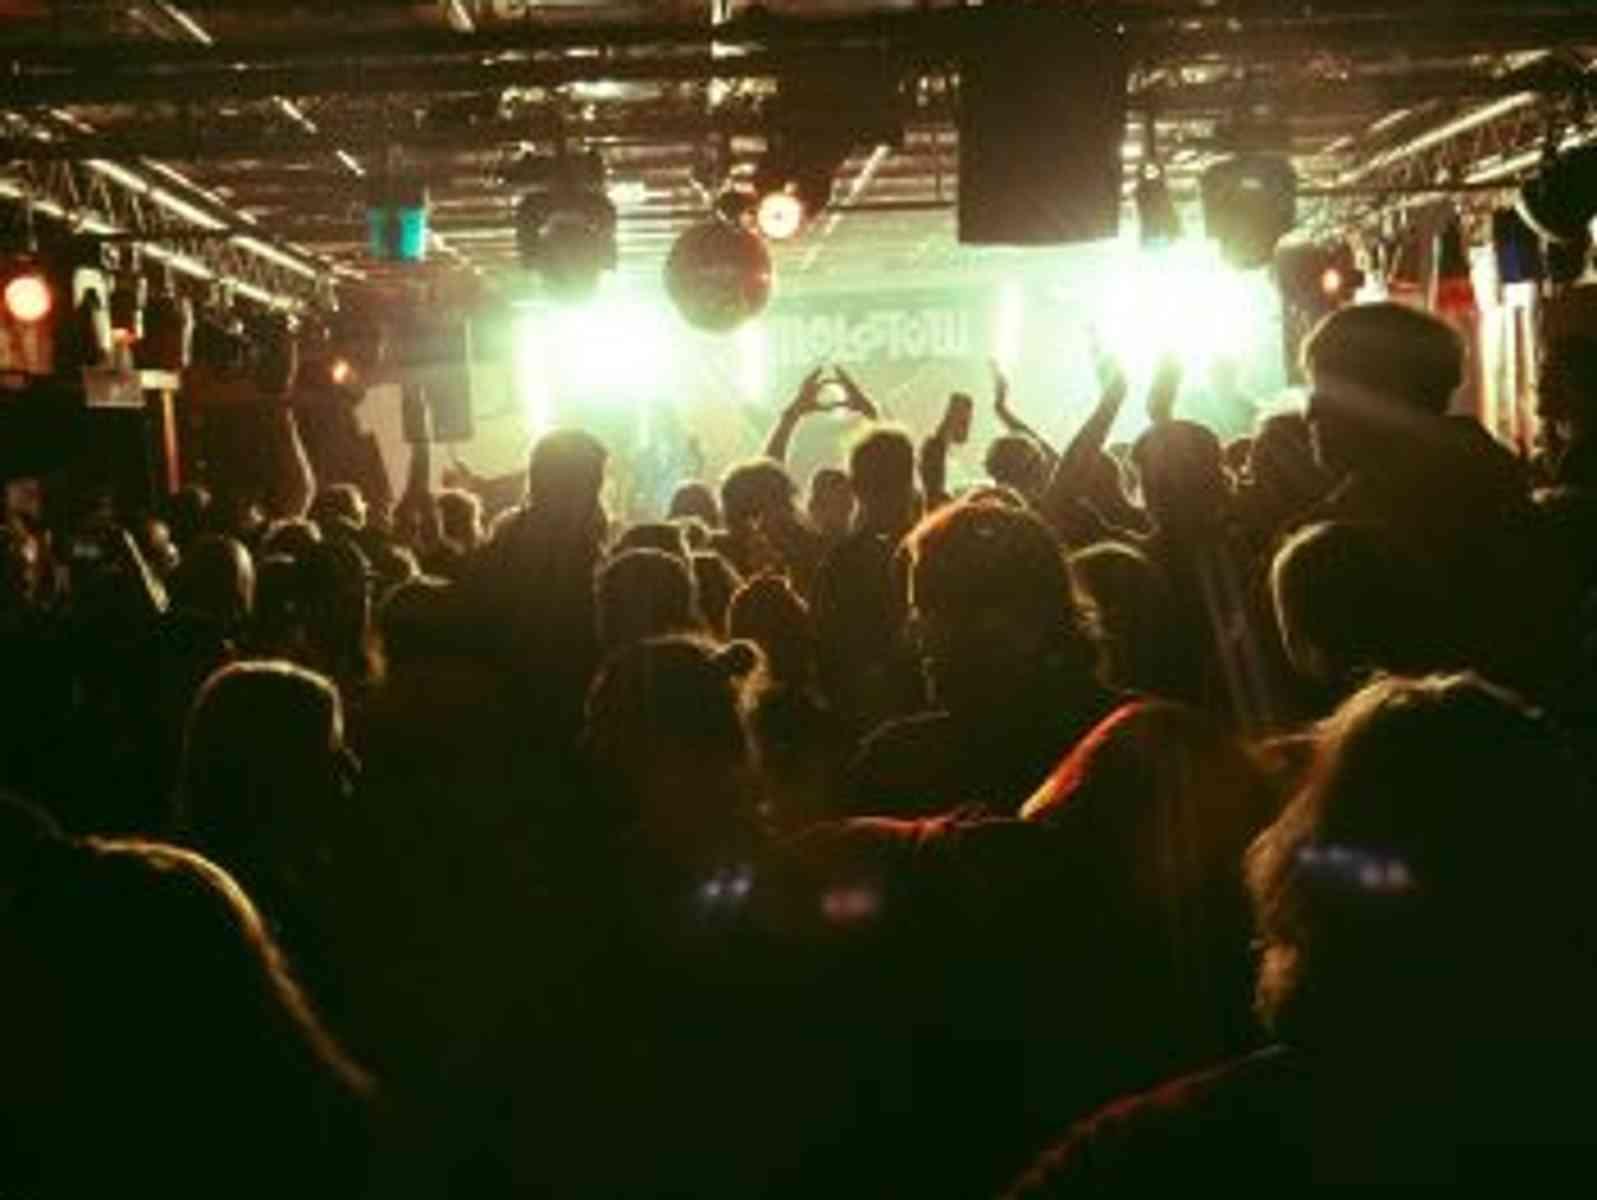 Personen feiern vor einer Bühne mit Partylicht.